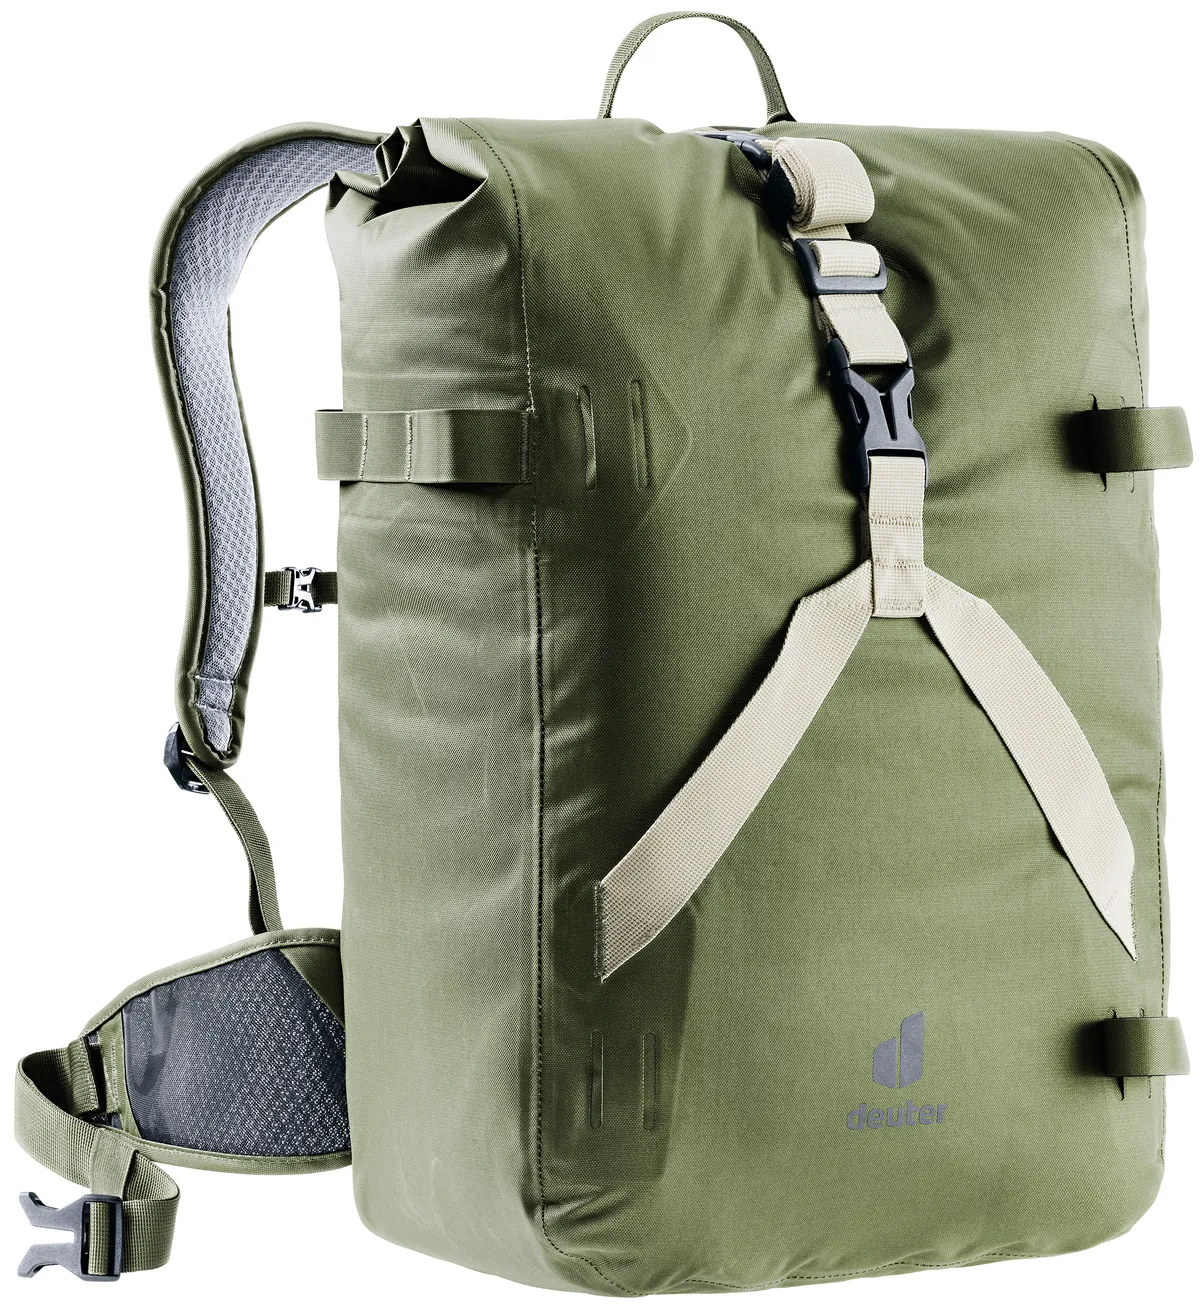 Deuter Amager 25 plus waterproof backpack